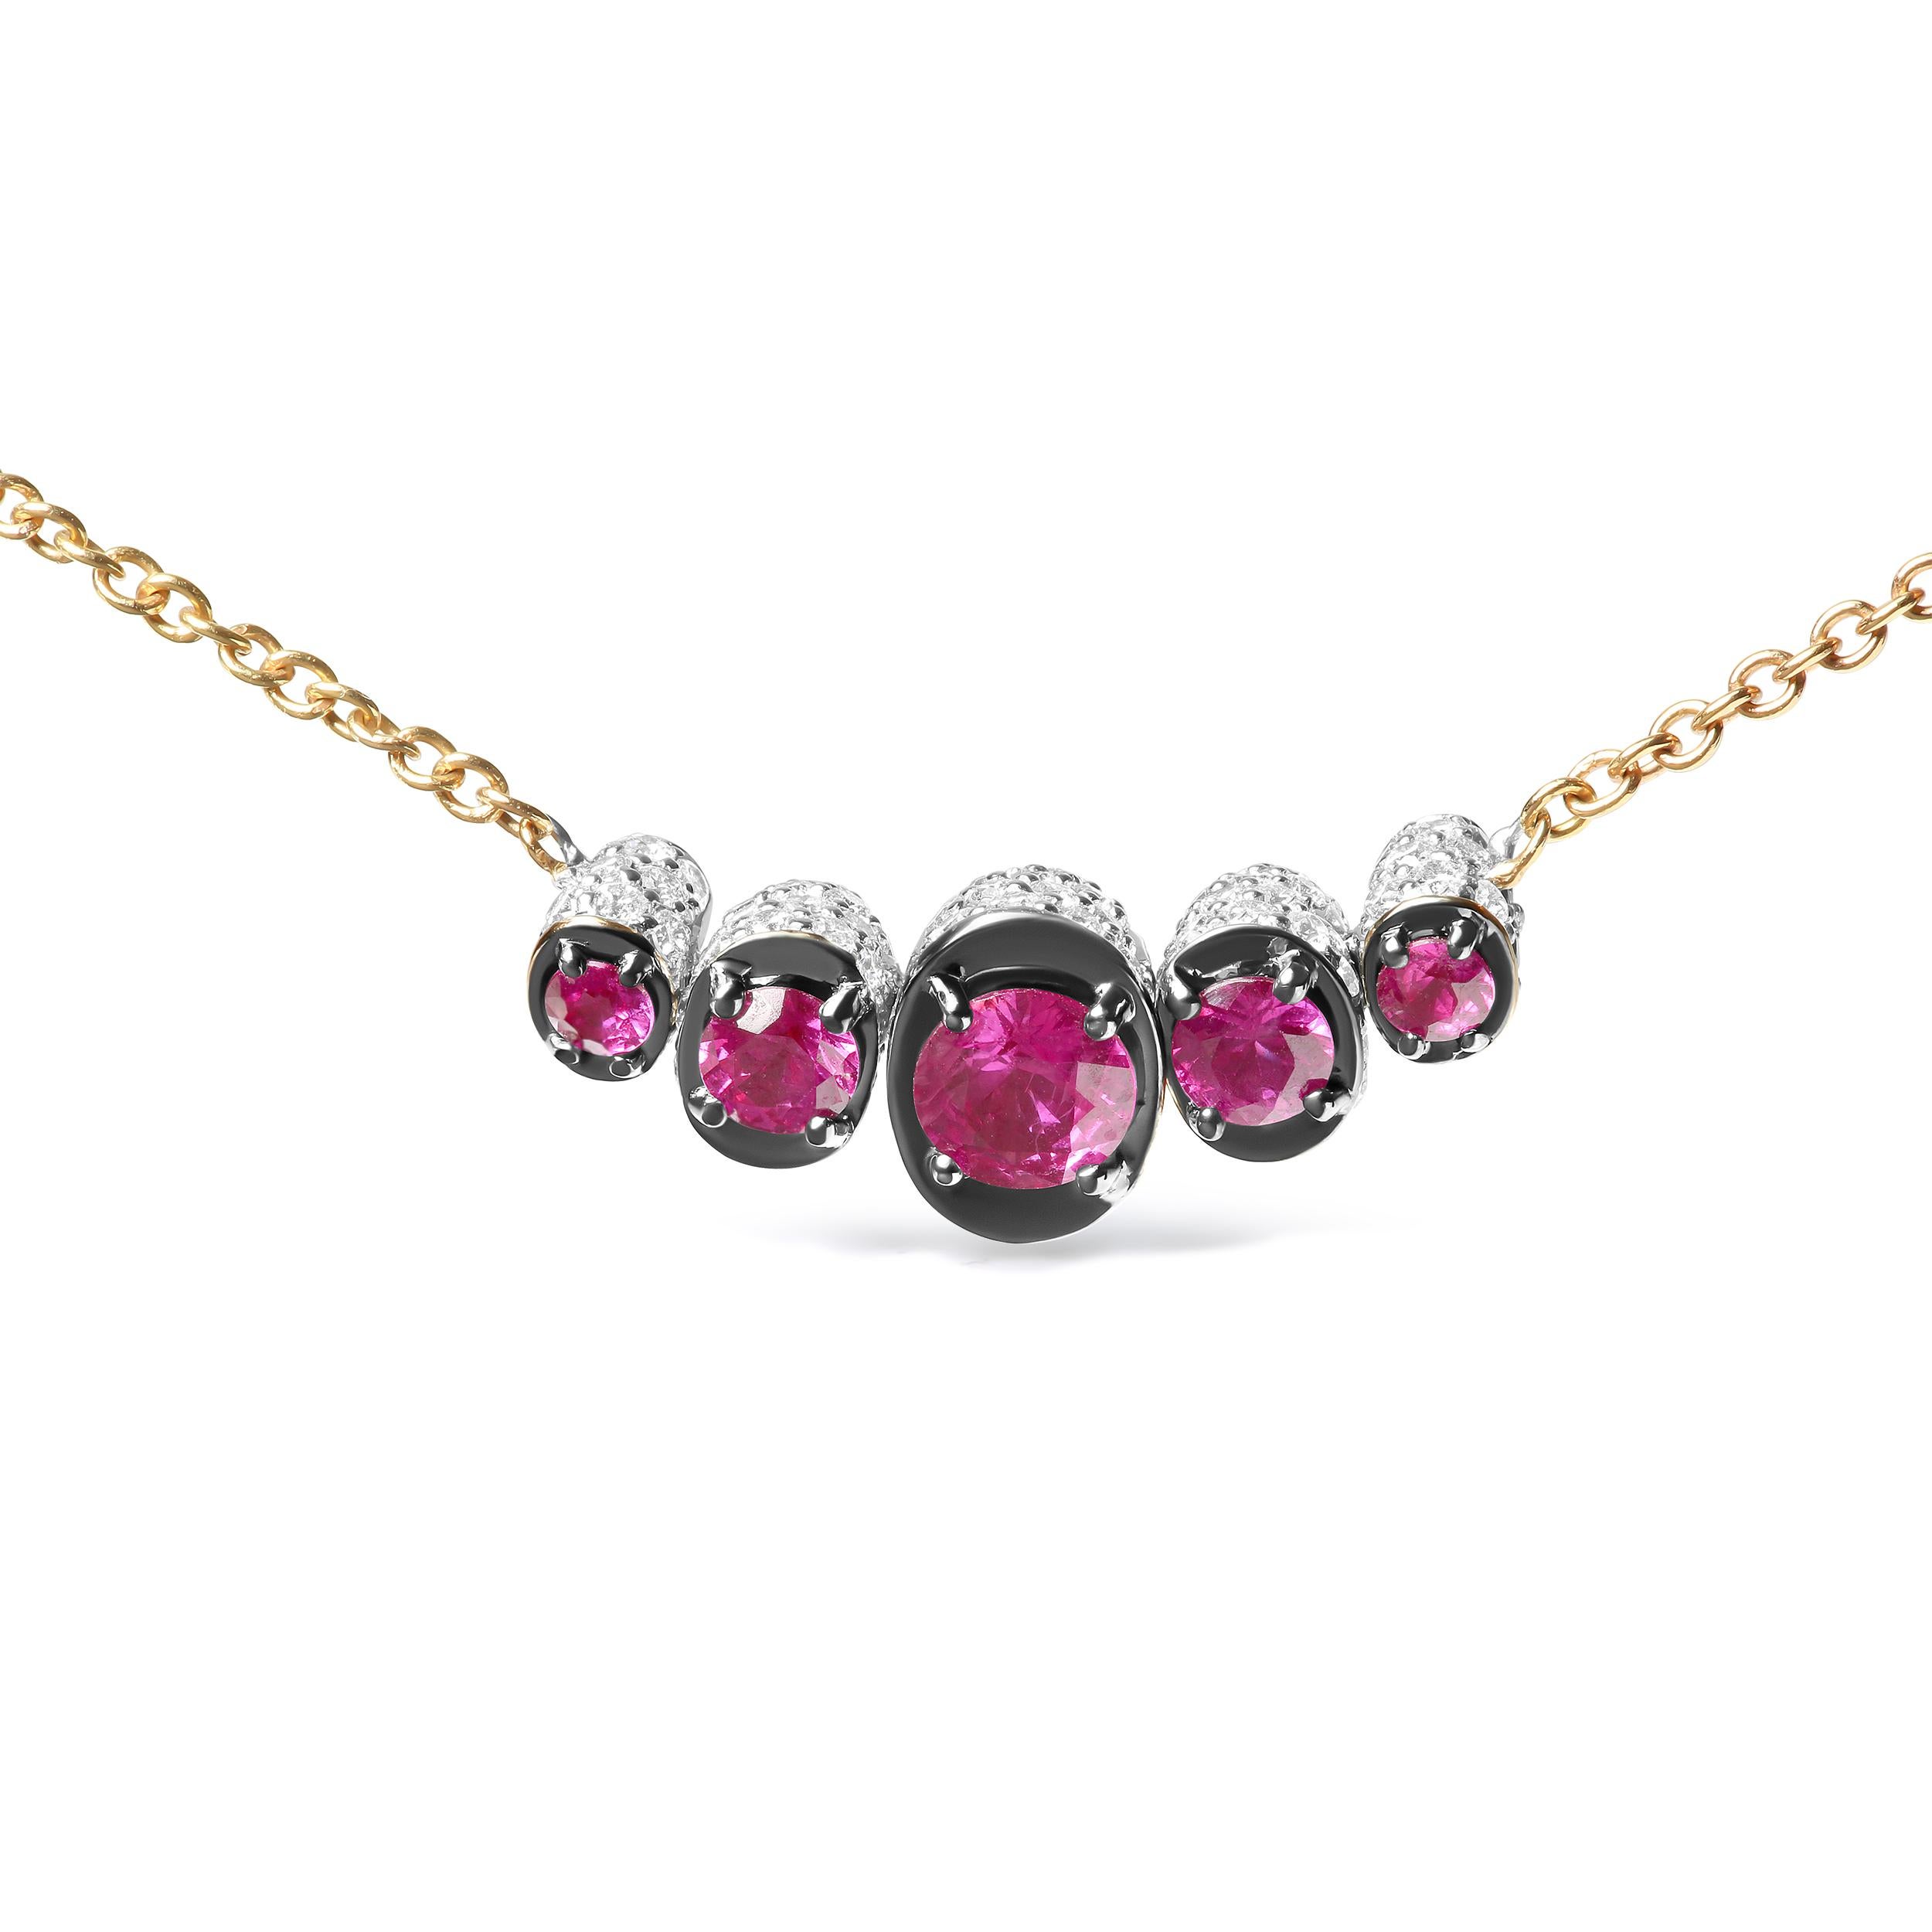 Diese Halskette aus luxuriösem 18-karätigem Roségold zeichnet sich durch ein modernes Design mit natürlichen, runden, wärmebehandelten roten Rubinen aus, die in den Größen 4 mm, 3 mm und 2 mm gestaffelt sind, wobei der größte Stein in der Mitte